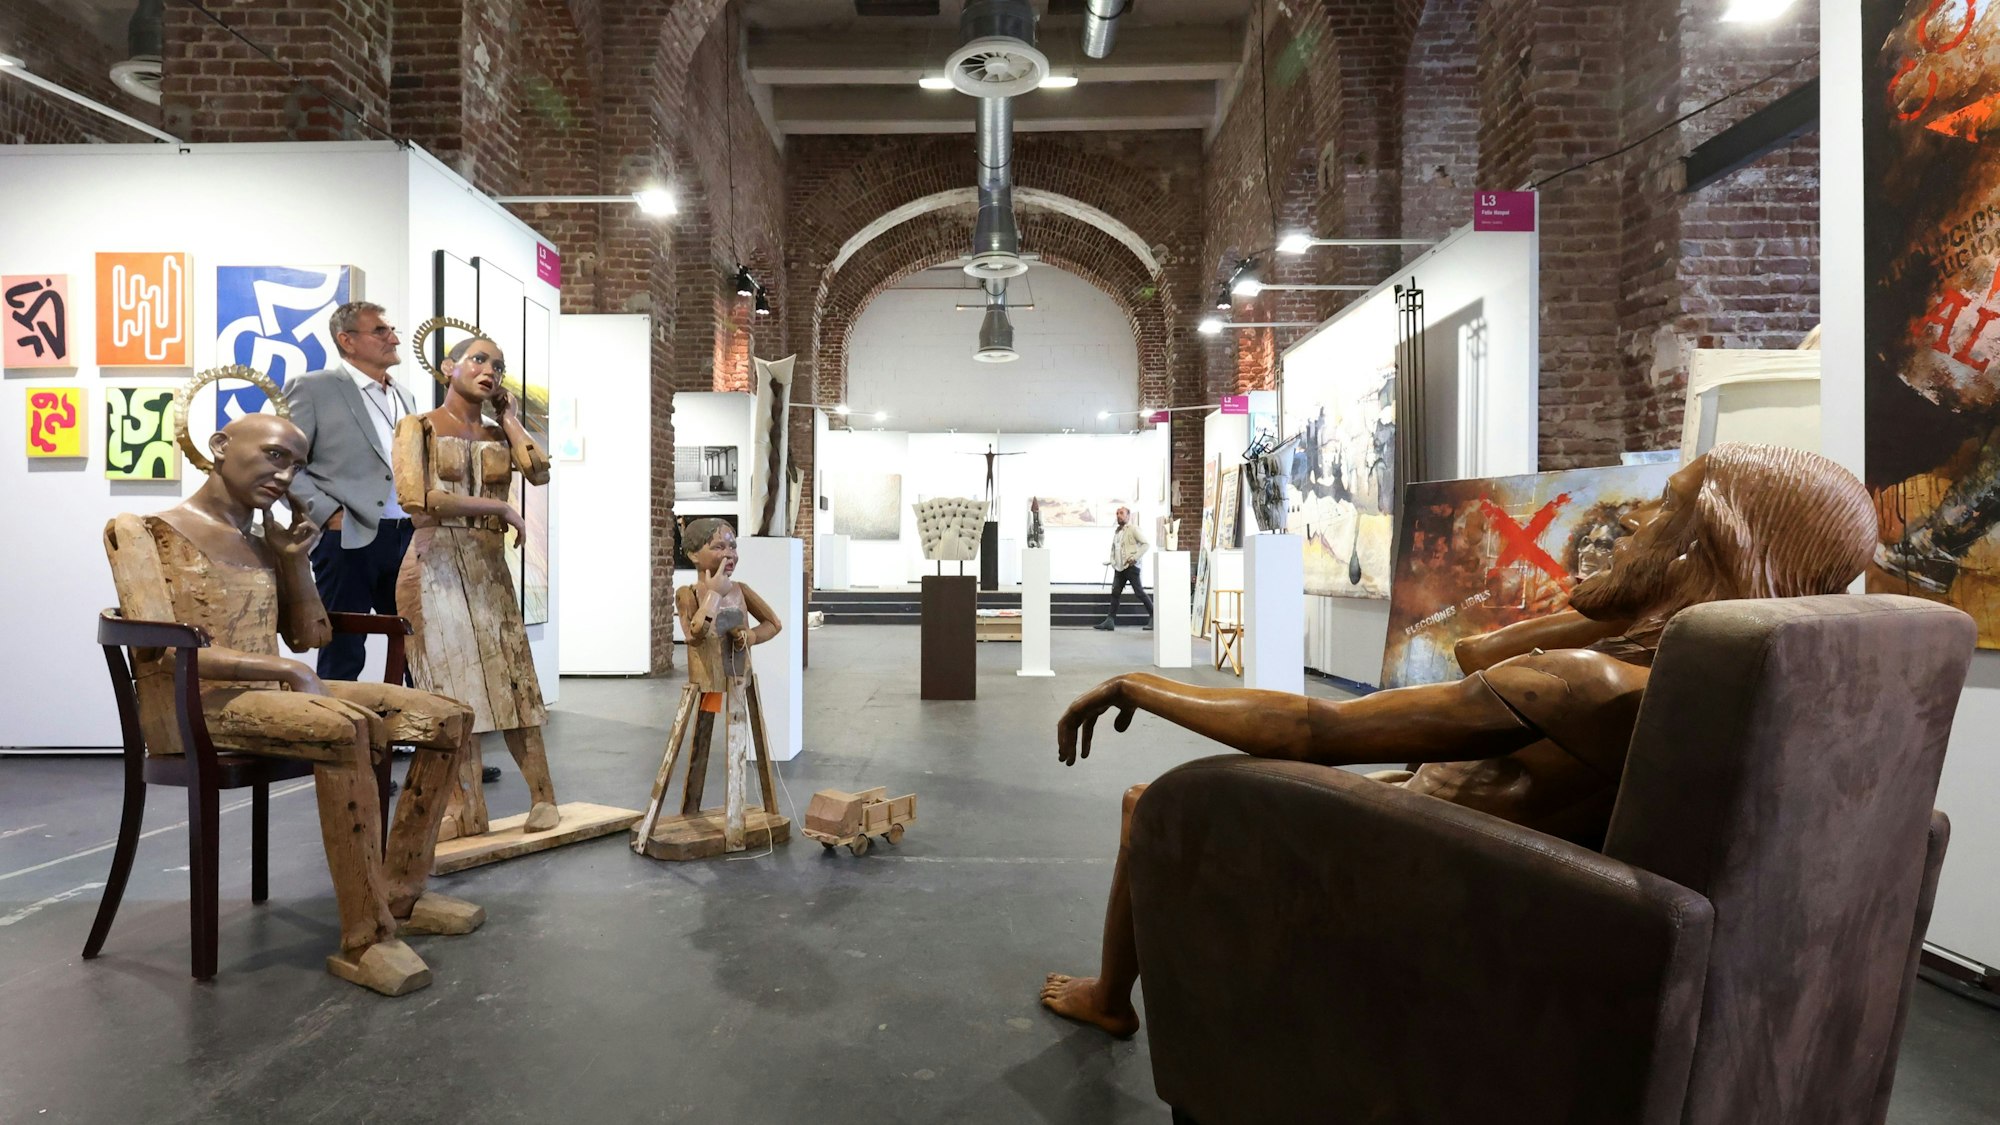 In einer Halle sind lebensgroße Holz-Menschen ausgestellt, an den Wänden hängen Kunstwerke